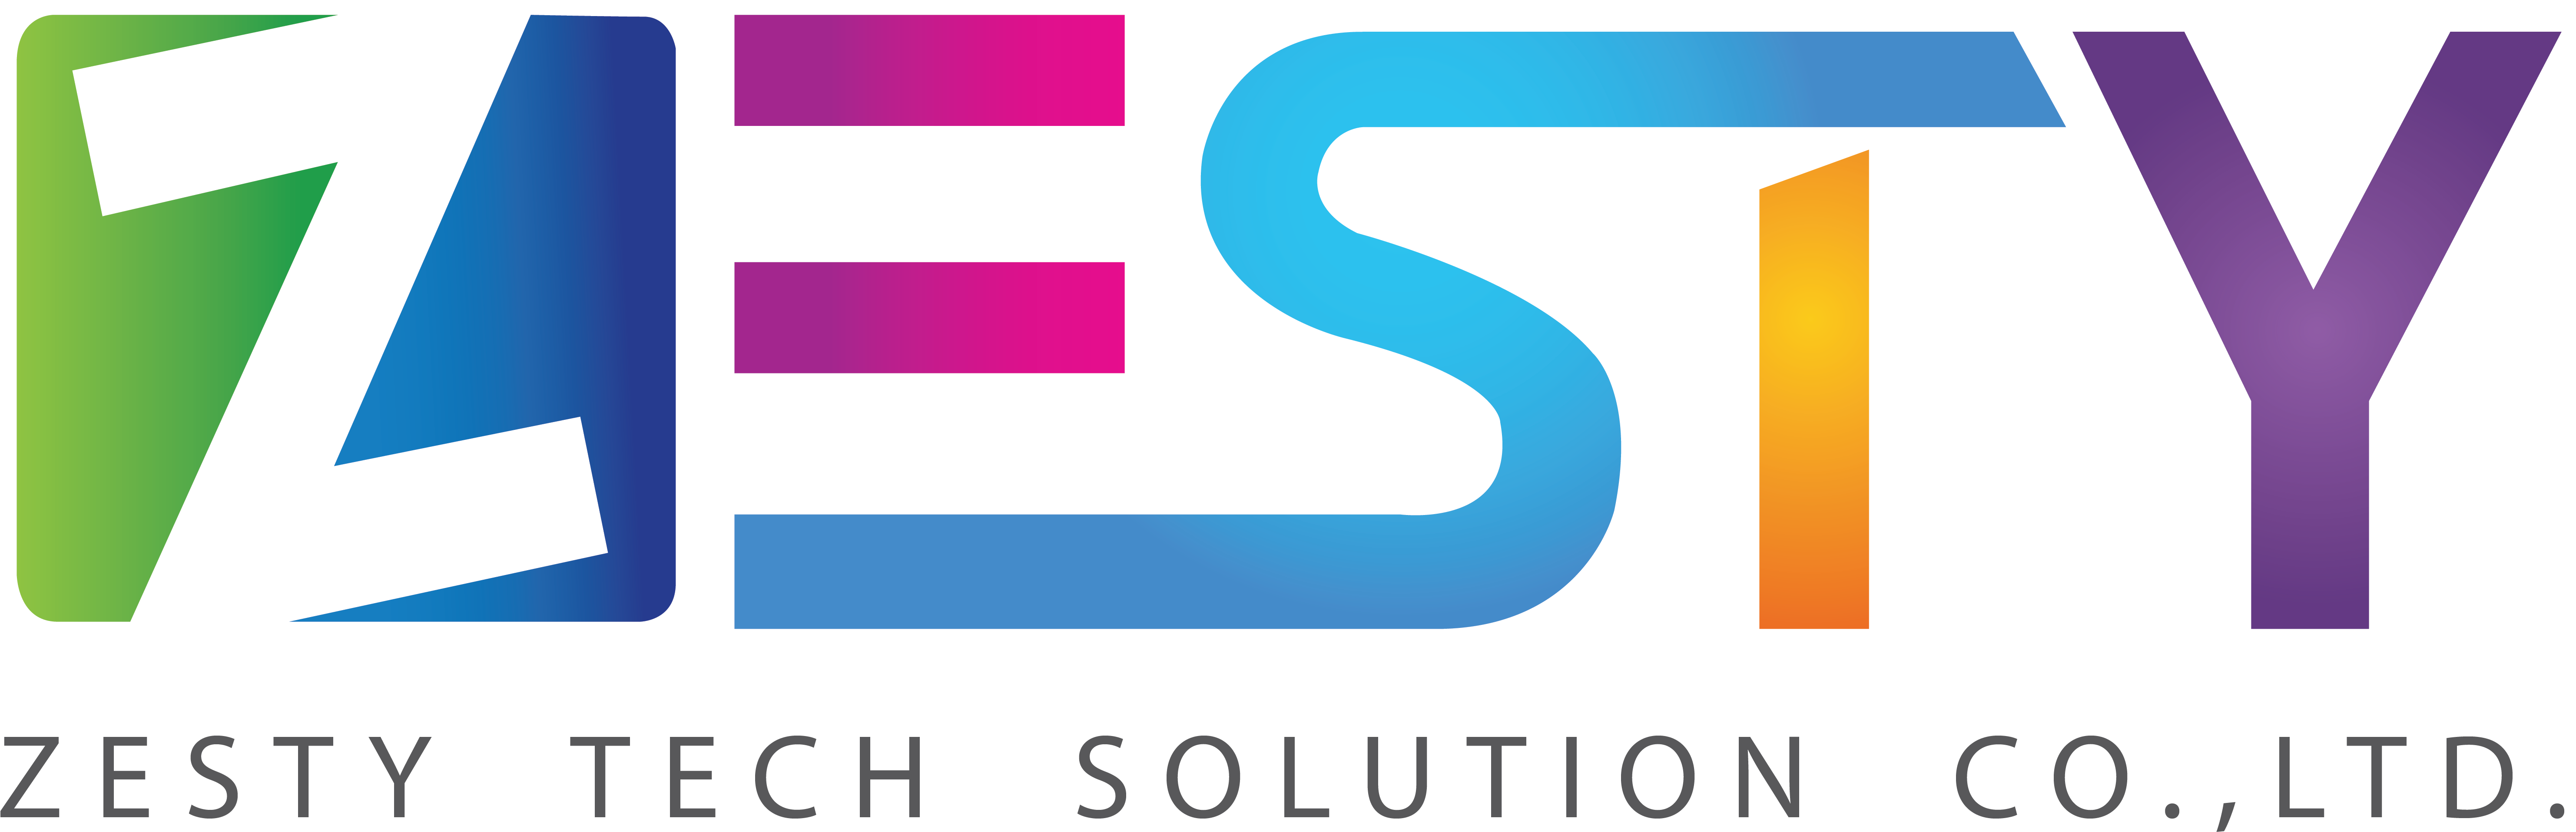 Zesty Tech Solution Company Limited Portfolio Rh Zesty - Business (6667x2500)